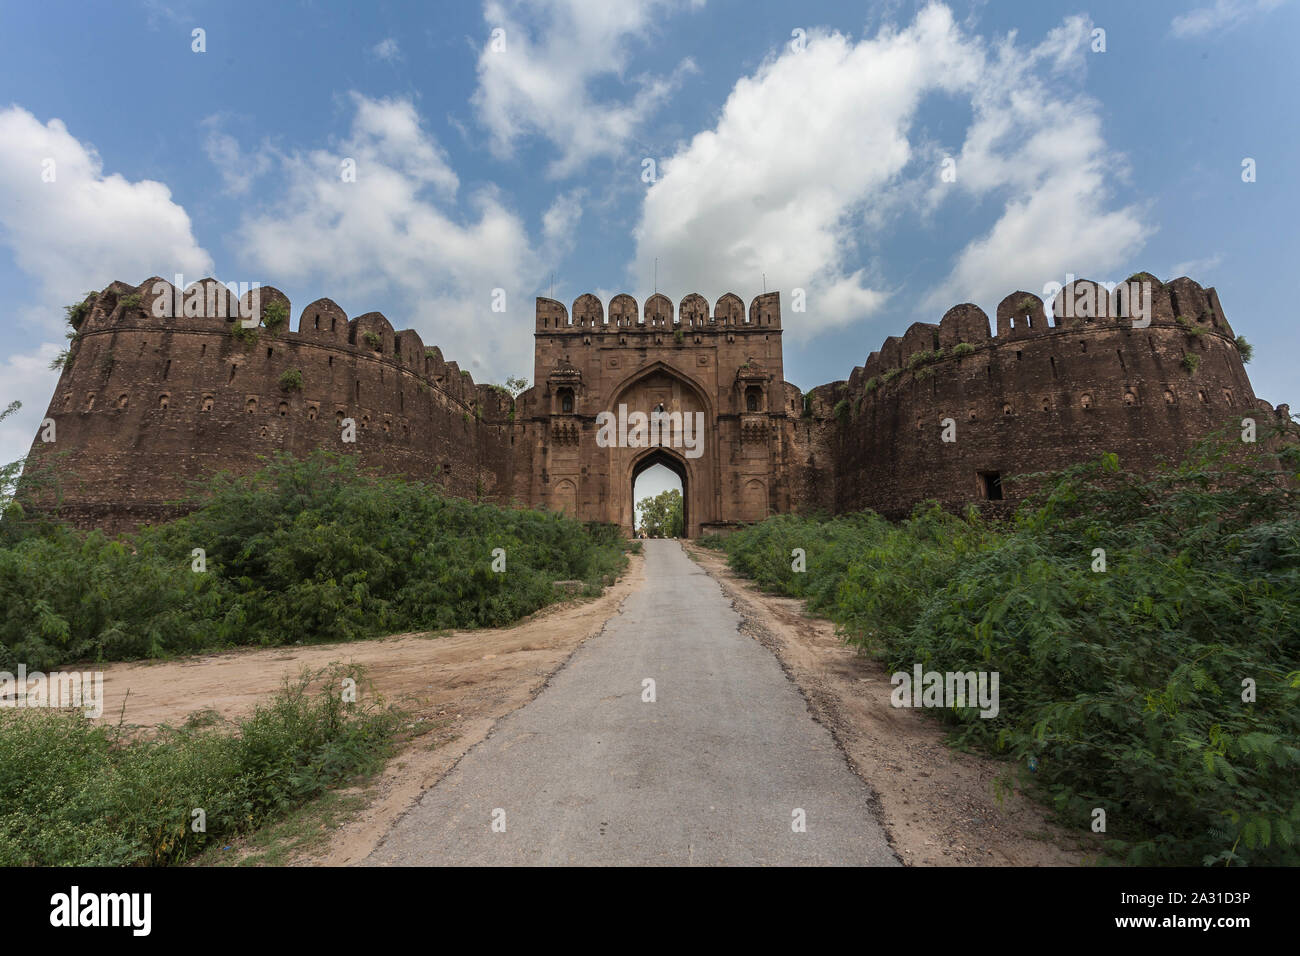 Le fort de Rohtas (Punjabi, ourdou : قلعہ روہتاس, romanisé : Qilā Rohtās) est une forteresse du 16e siècle située près de la ville de Dina dans le Jhelum, au Punjab. Banque D'Images